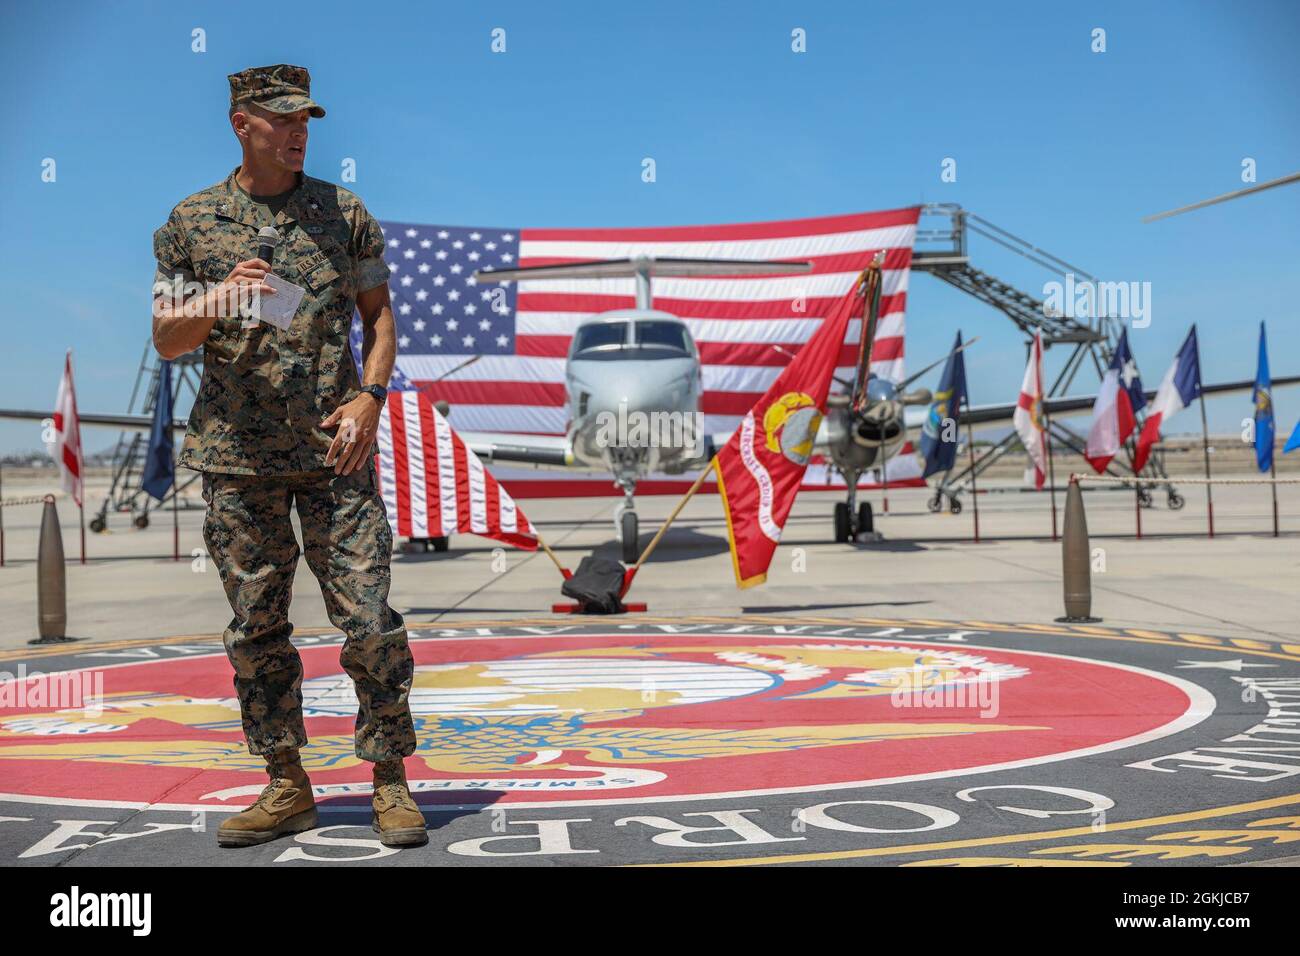 Le lieutenant-colonel Jim Paxton s'adresse au public lors d'une cérémonie de retraite à la station aérienne du corps des Marines Yuma, le 30 avril 2021. La cérémonie a honoré le Lcol Paxton et le sacrifice qu'il a fait en servant dans le corps des Marines. Banque D'Images